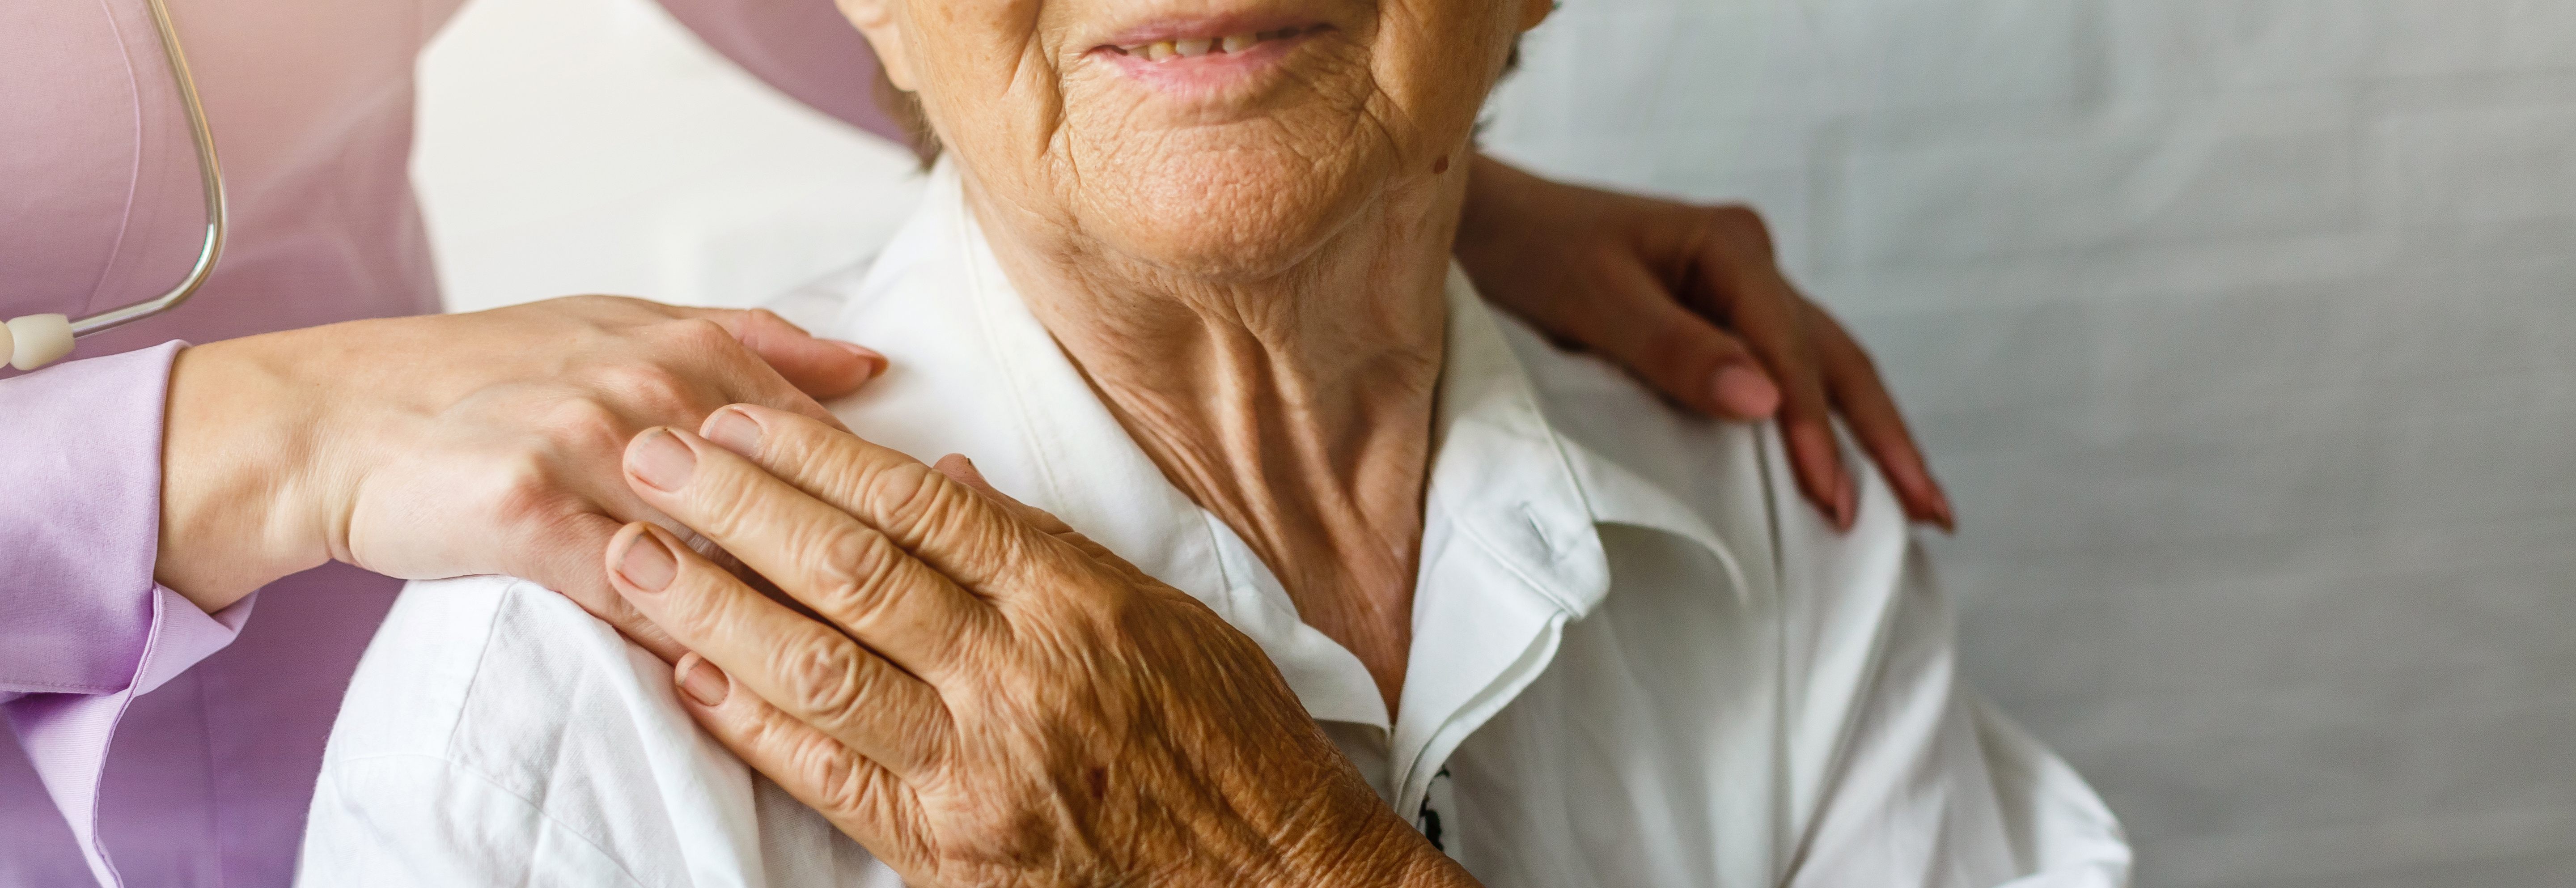 Les auxiliaires de vie s'occupent de personnes âgées ou handicapées. © Angelov, Adobe Stock